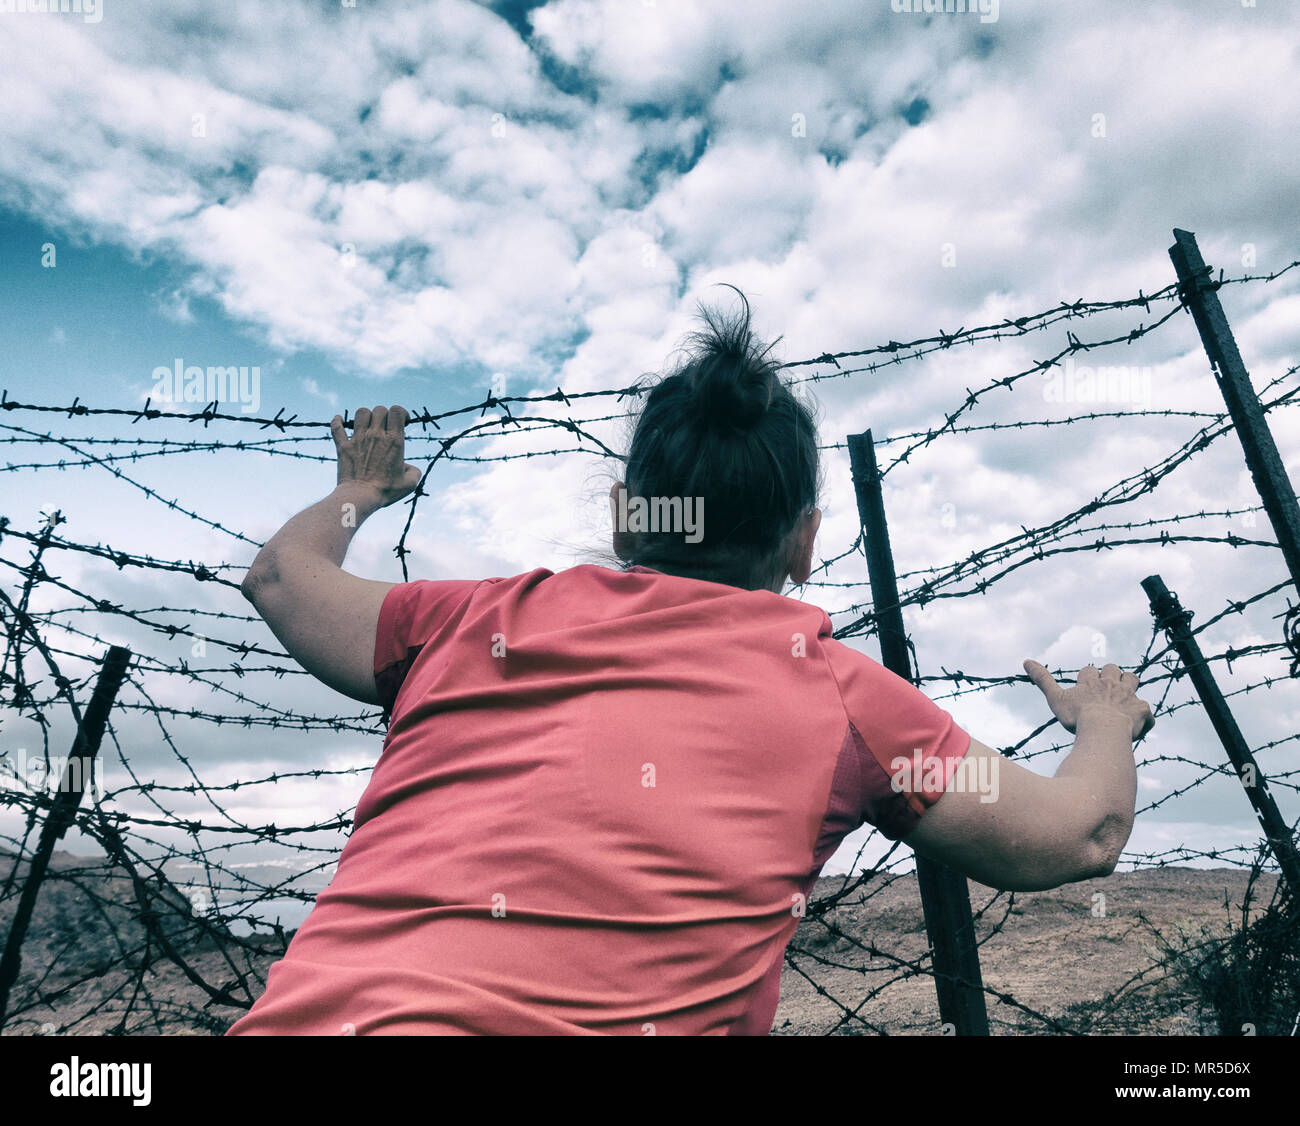 La donna dietro al filo spinato: asilo, Brexit, l' immigrazione clandestina e la tratta di esseri umani e la schiavitù...,il concetto di immagine. Foto Stock